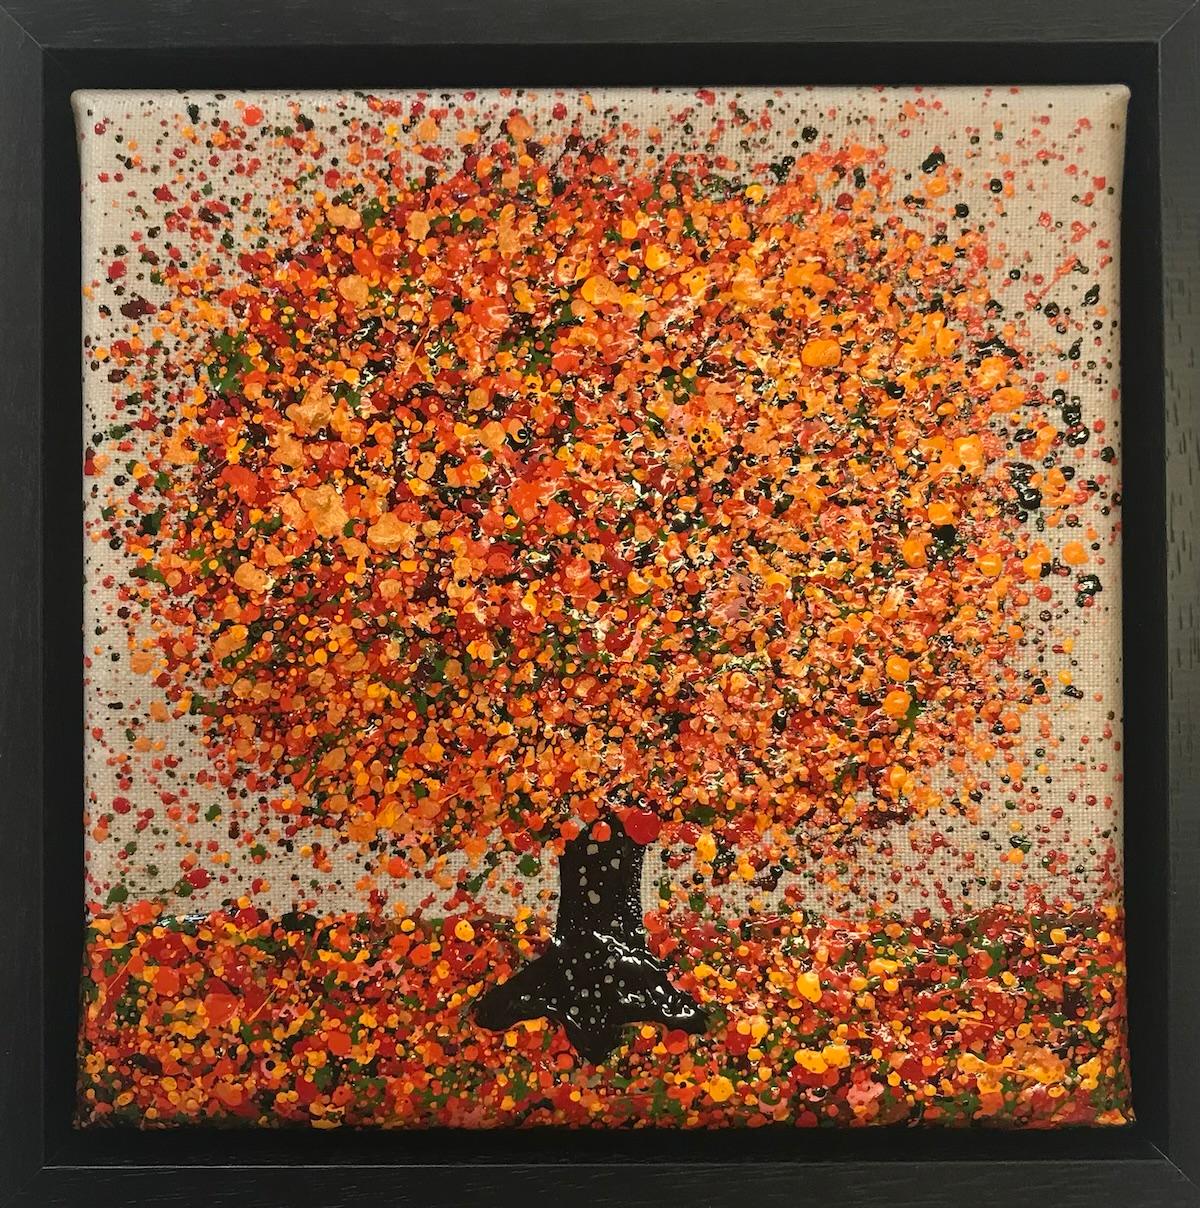 Petit automne sur lin par Nicky Chubb [2022]

Little Autumn on Linen est une peinture de paysage originale à petite échelle de l'artiste Nicky Chubb. Cette peinture présente sa signature de pointillés et de pointillés, ainsi qu'un arbre qui